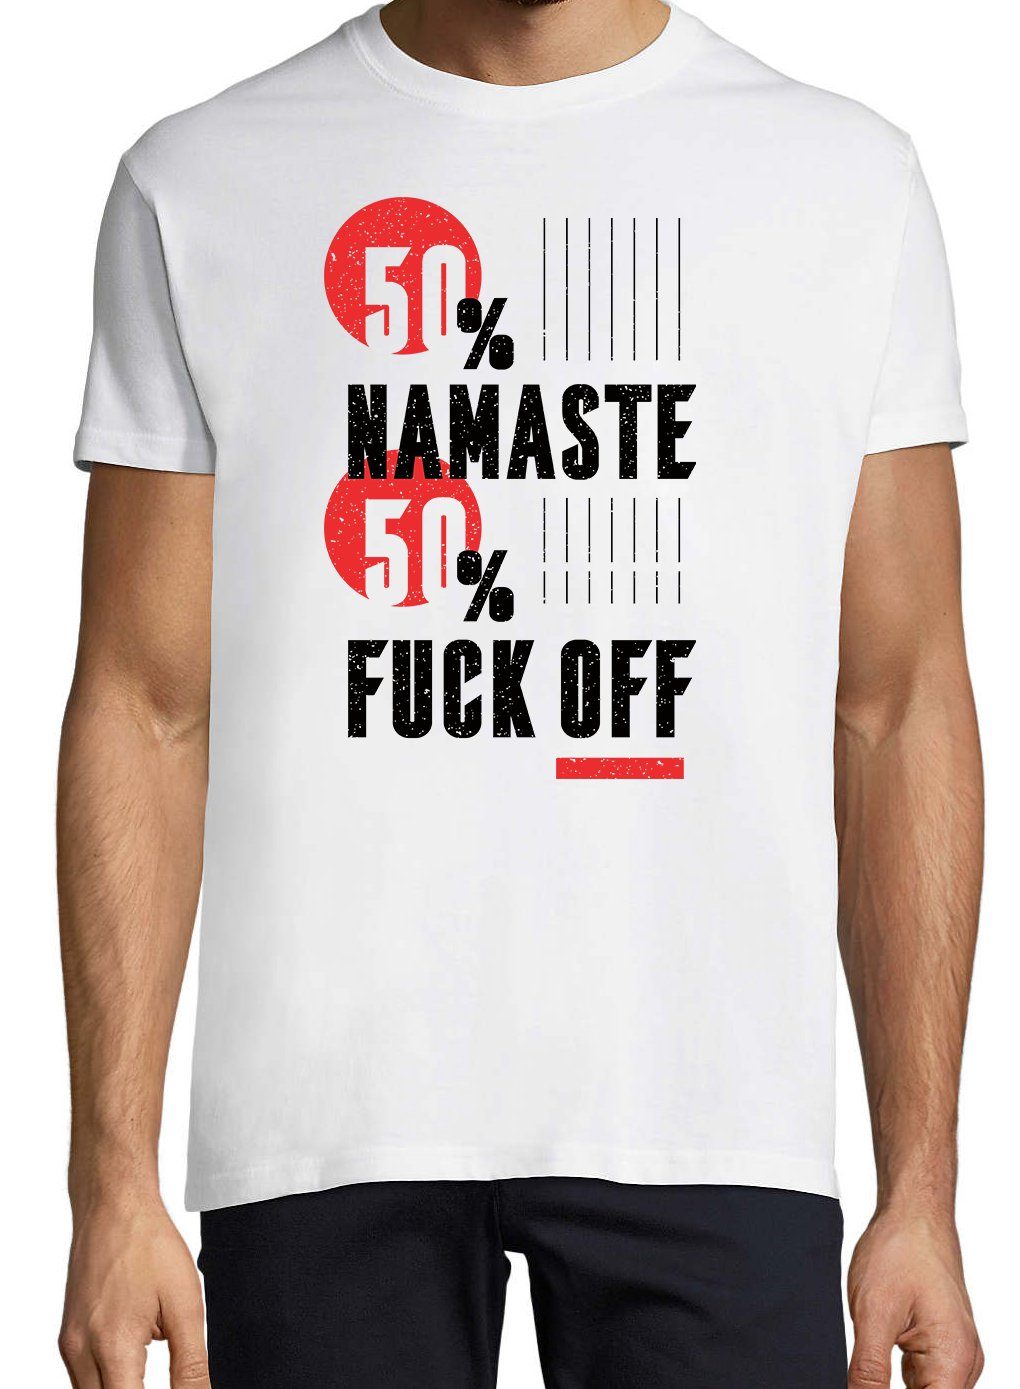 Print-Shirt lustigem Weiss 50% Designz Youth Herren "50% Namaste, Spruch Off" T-Shirt mit F**k